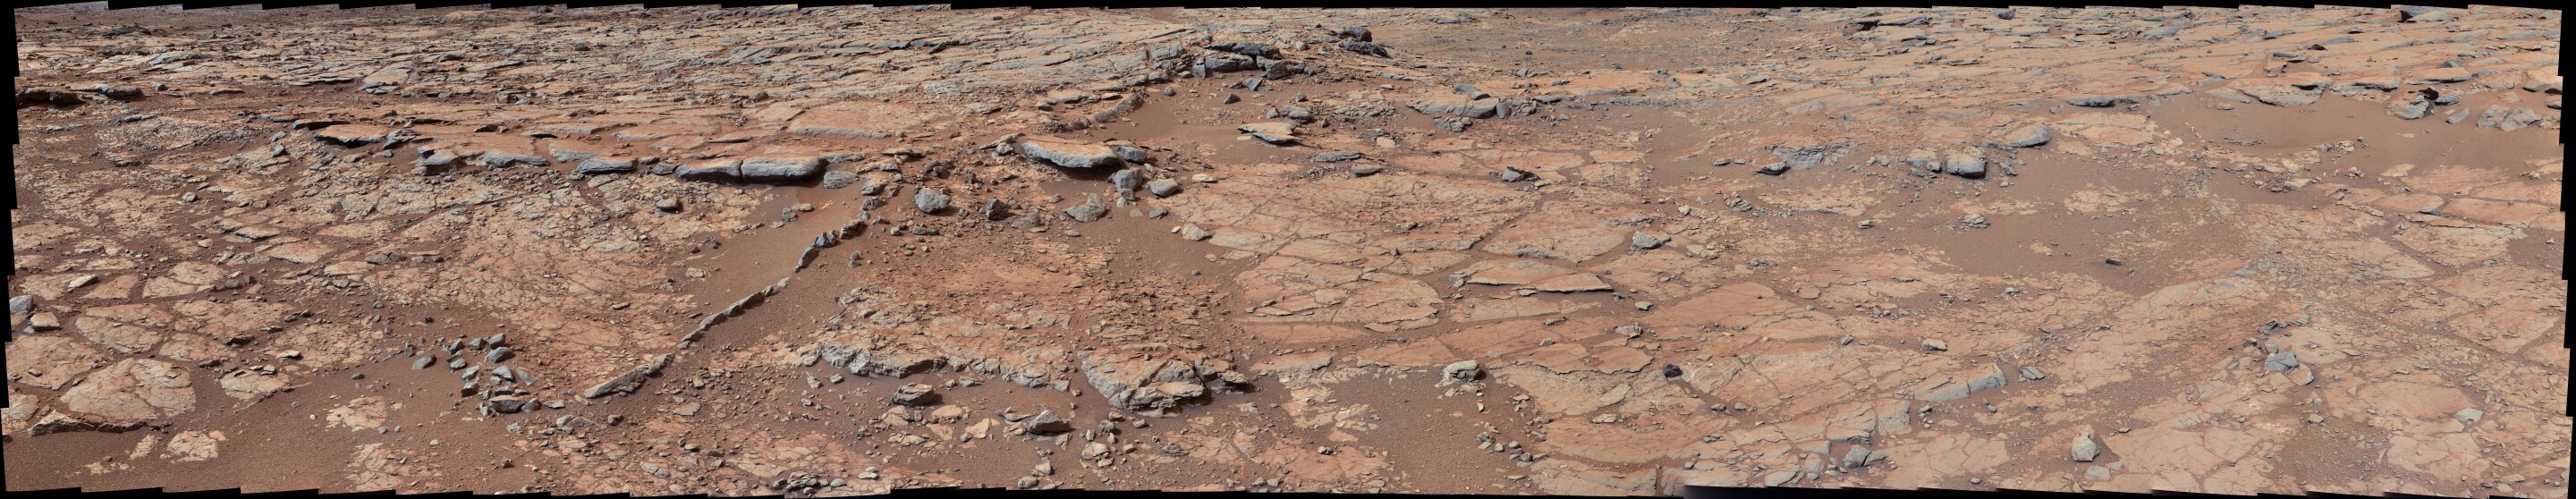 科学家首次测定了火星上关键生命成分的浓度